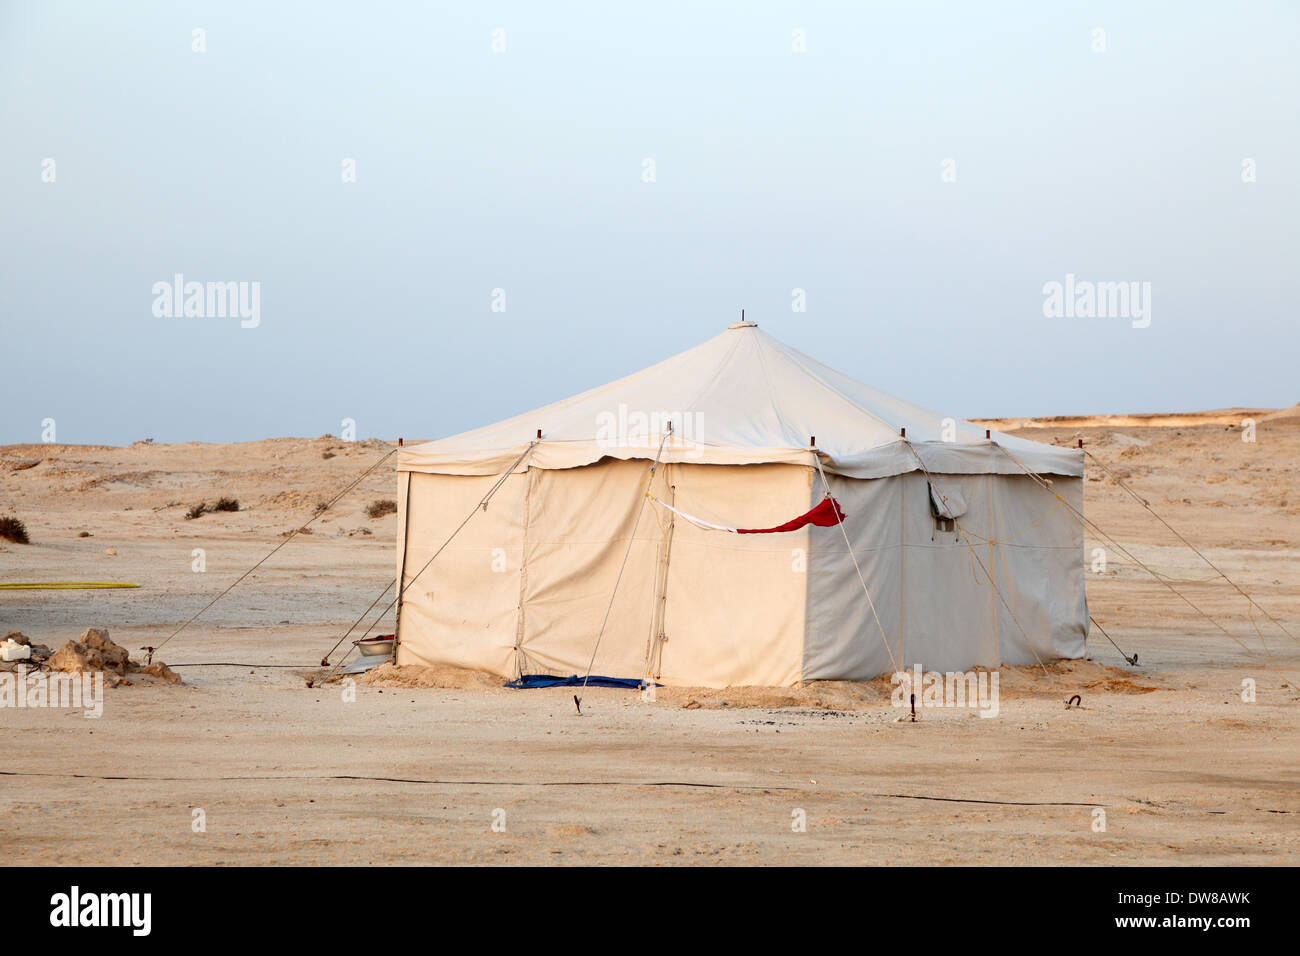 Tenda beduini immagini e fotografie stock ad alta risoluzione - Alamy